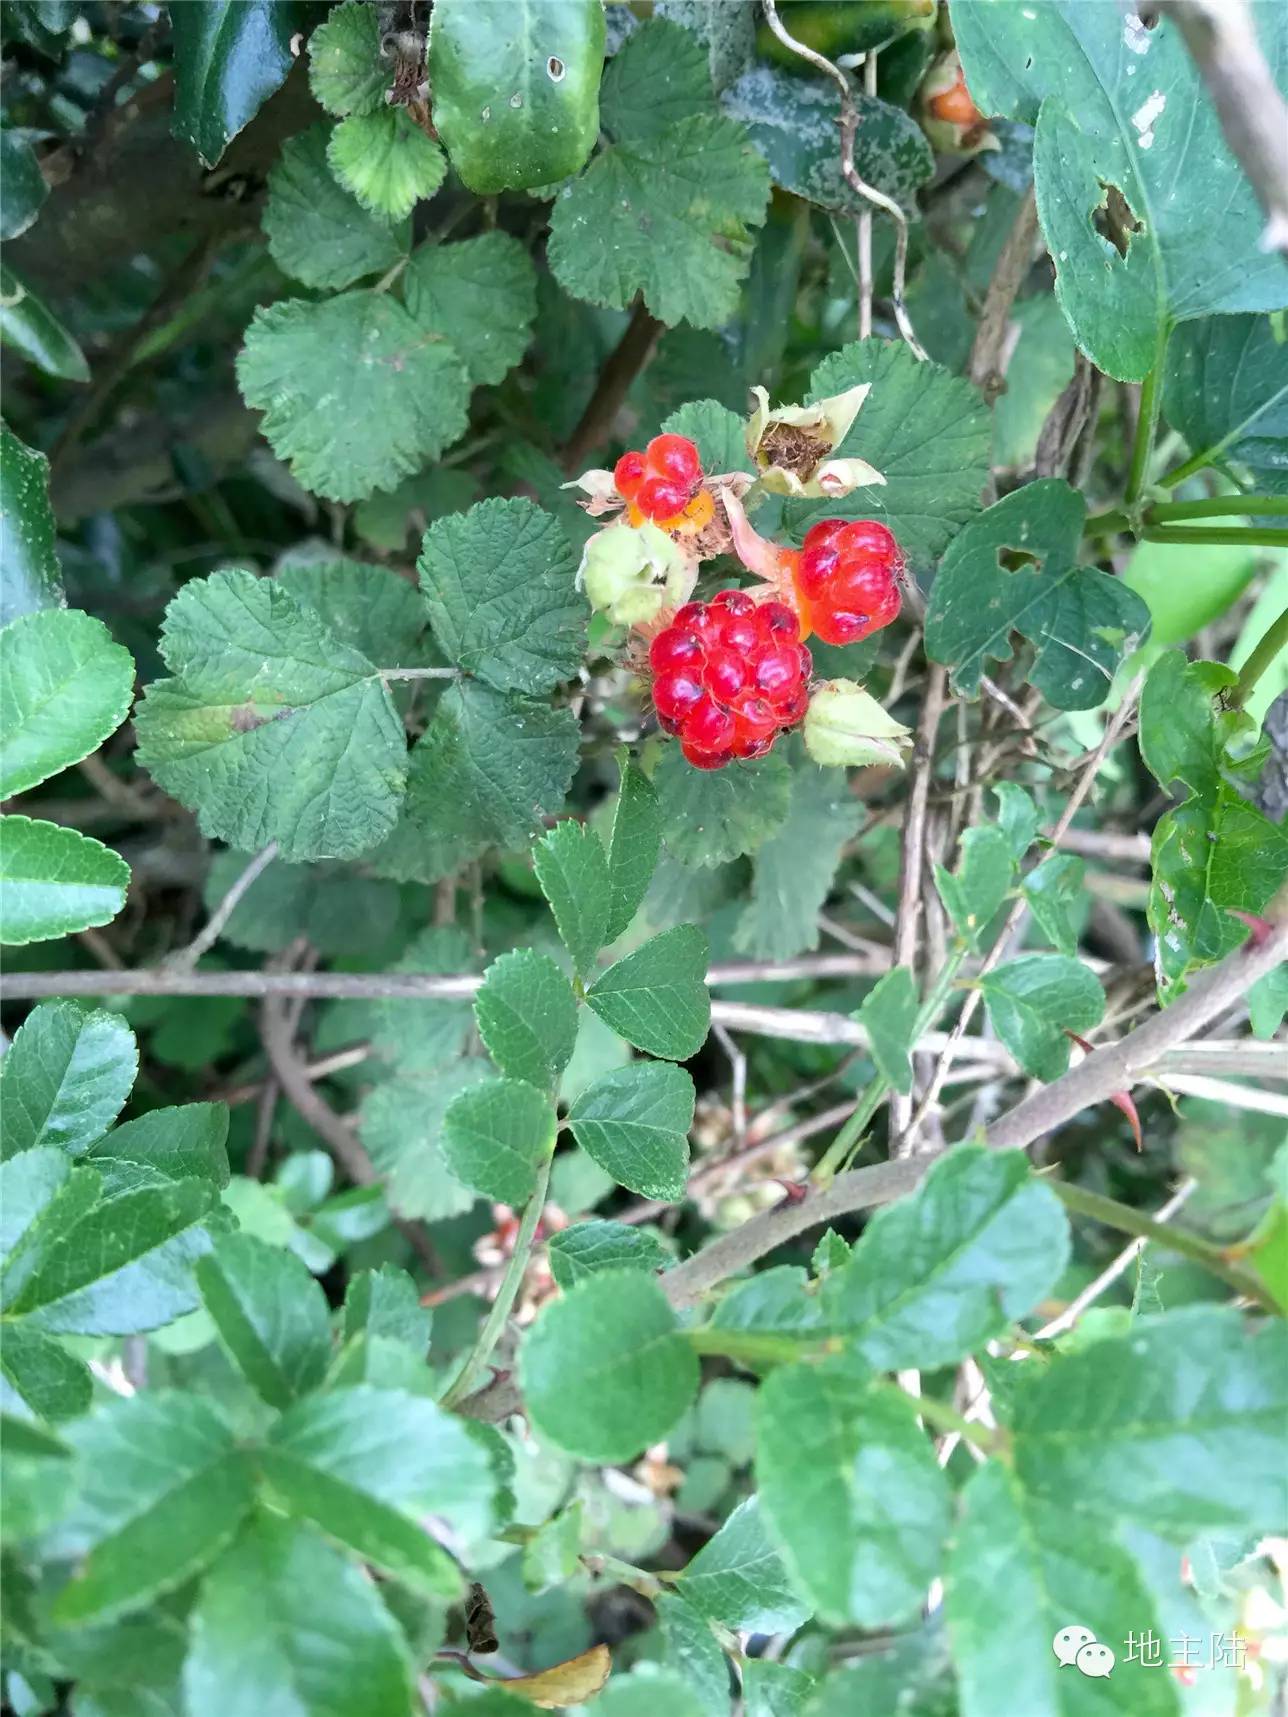 一路上都能看到这种红色的野莓果,我摘了颗尝尝,居然颇甜,感觉野外